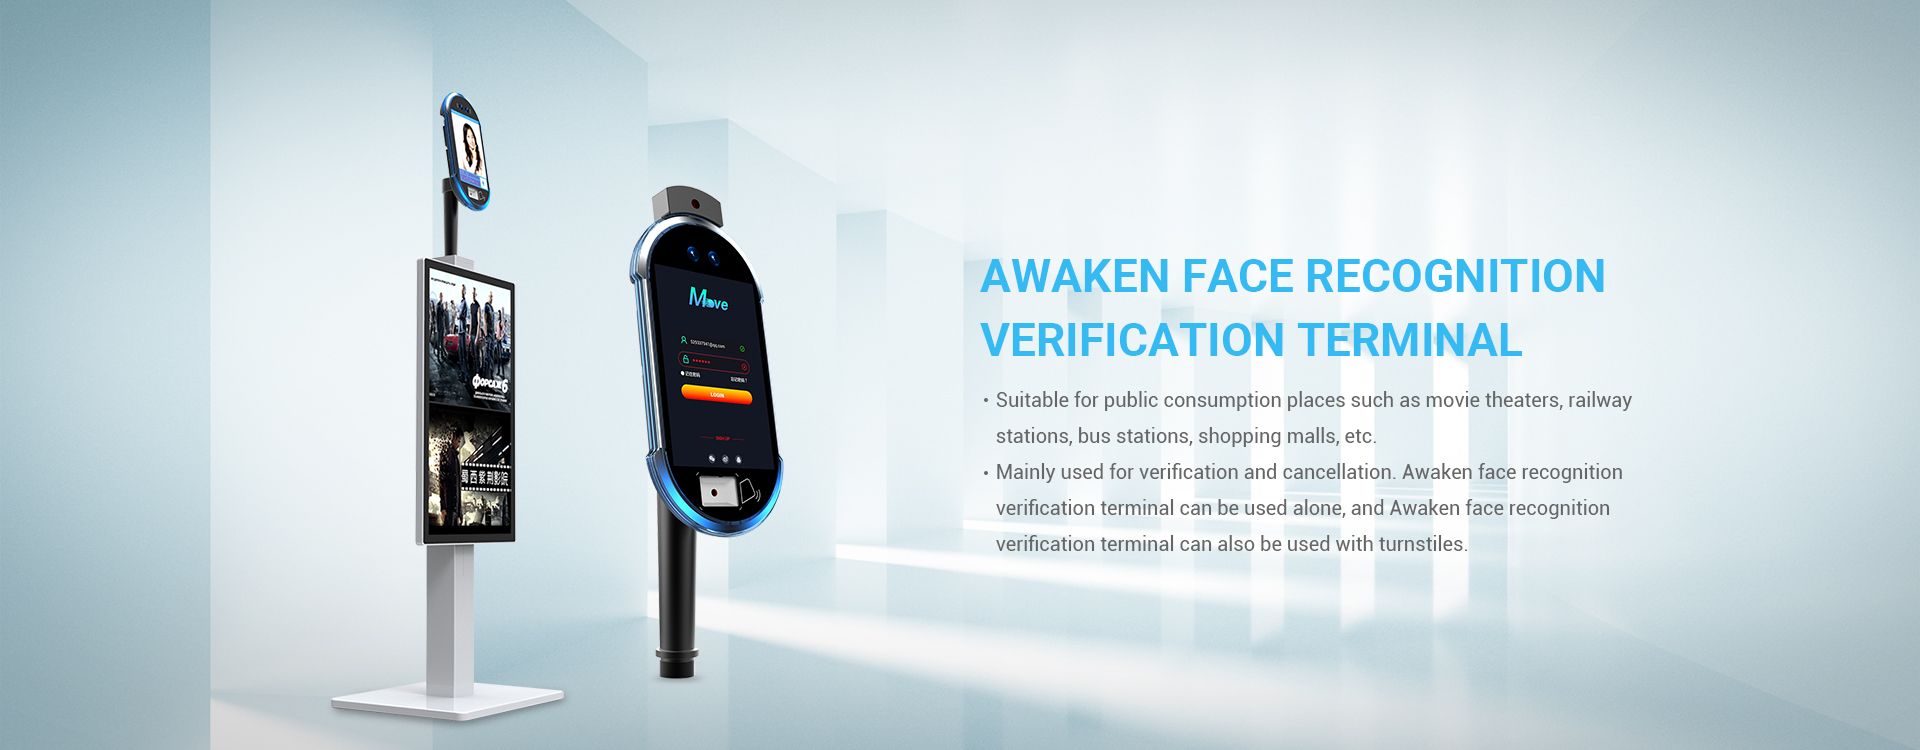 Face Recognition Verification Terminal